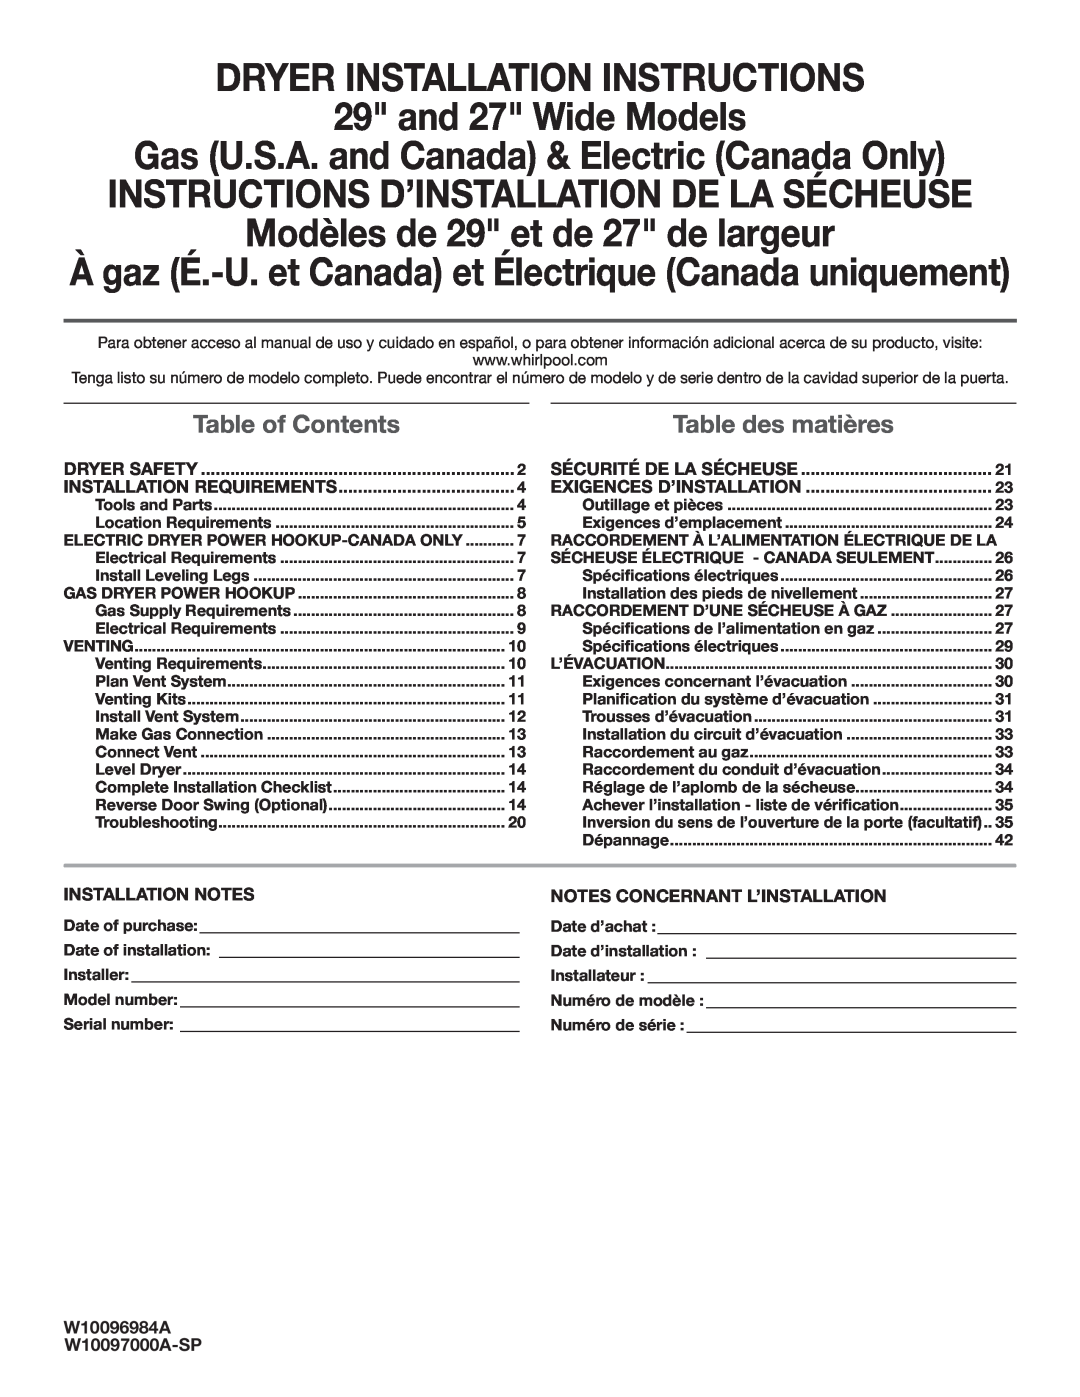 Maytag W10096984A installation instructions À gaz É.-U. et Canada et Électrique Canada uniquement, Table of Contents 